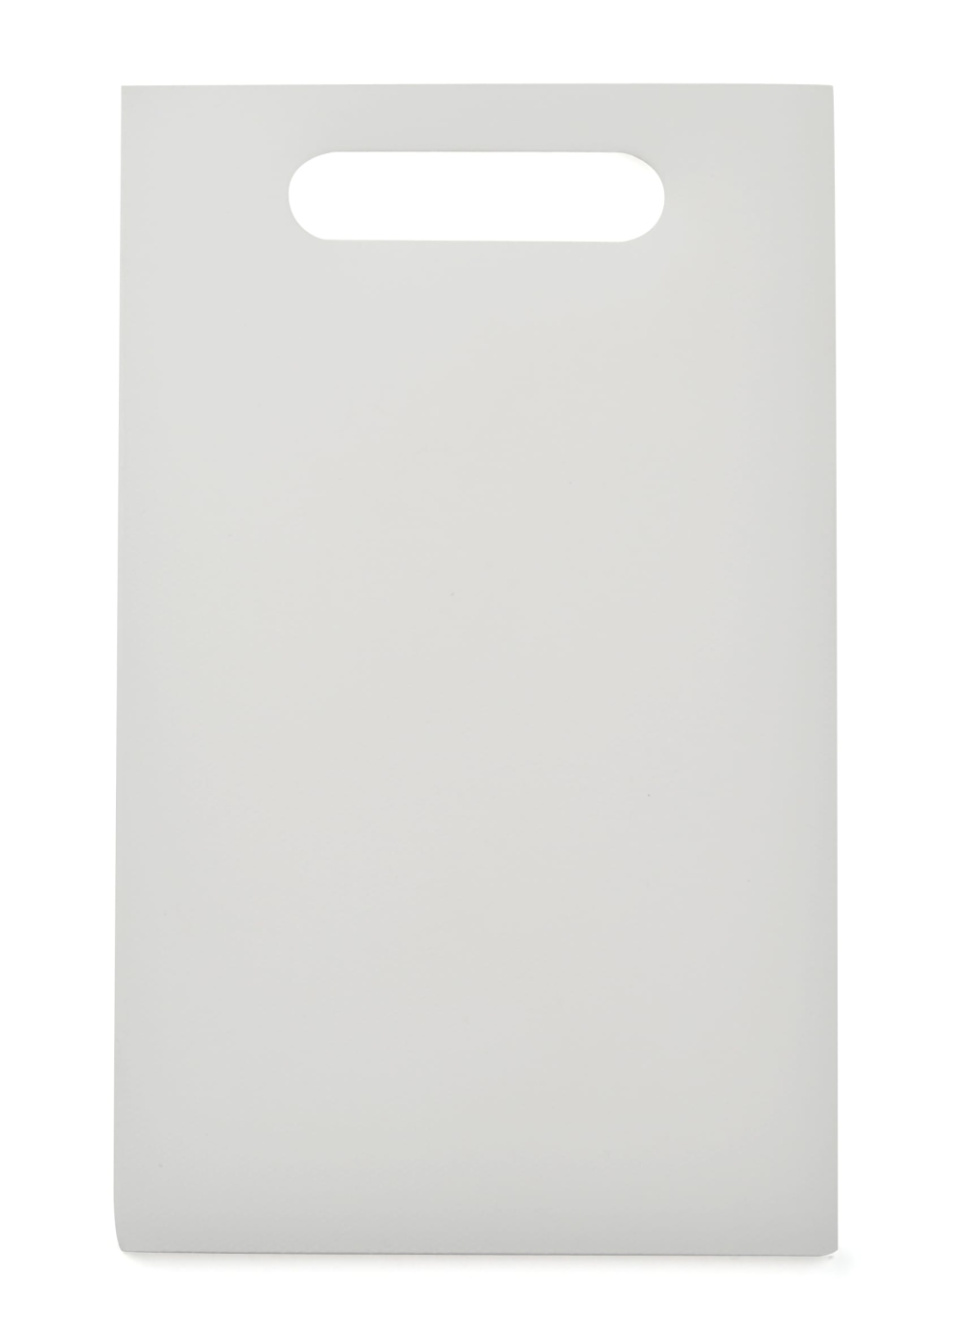 Leikkuulauta valkoinen, 24 x 15 cm - Exxent ryhmässä Ruoanlaitto / Keittiövälineet / Leikkuulaudat @ KitchenLab (1071-10195)